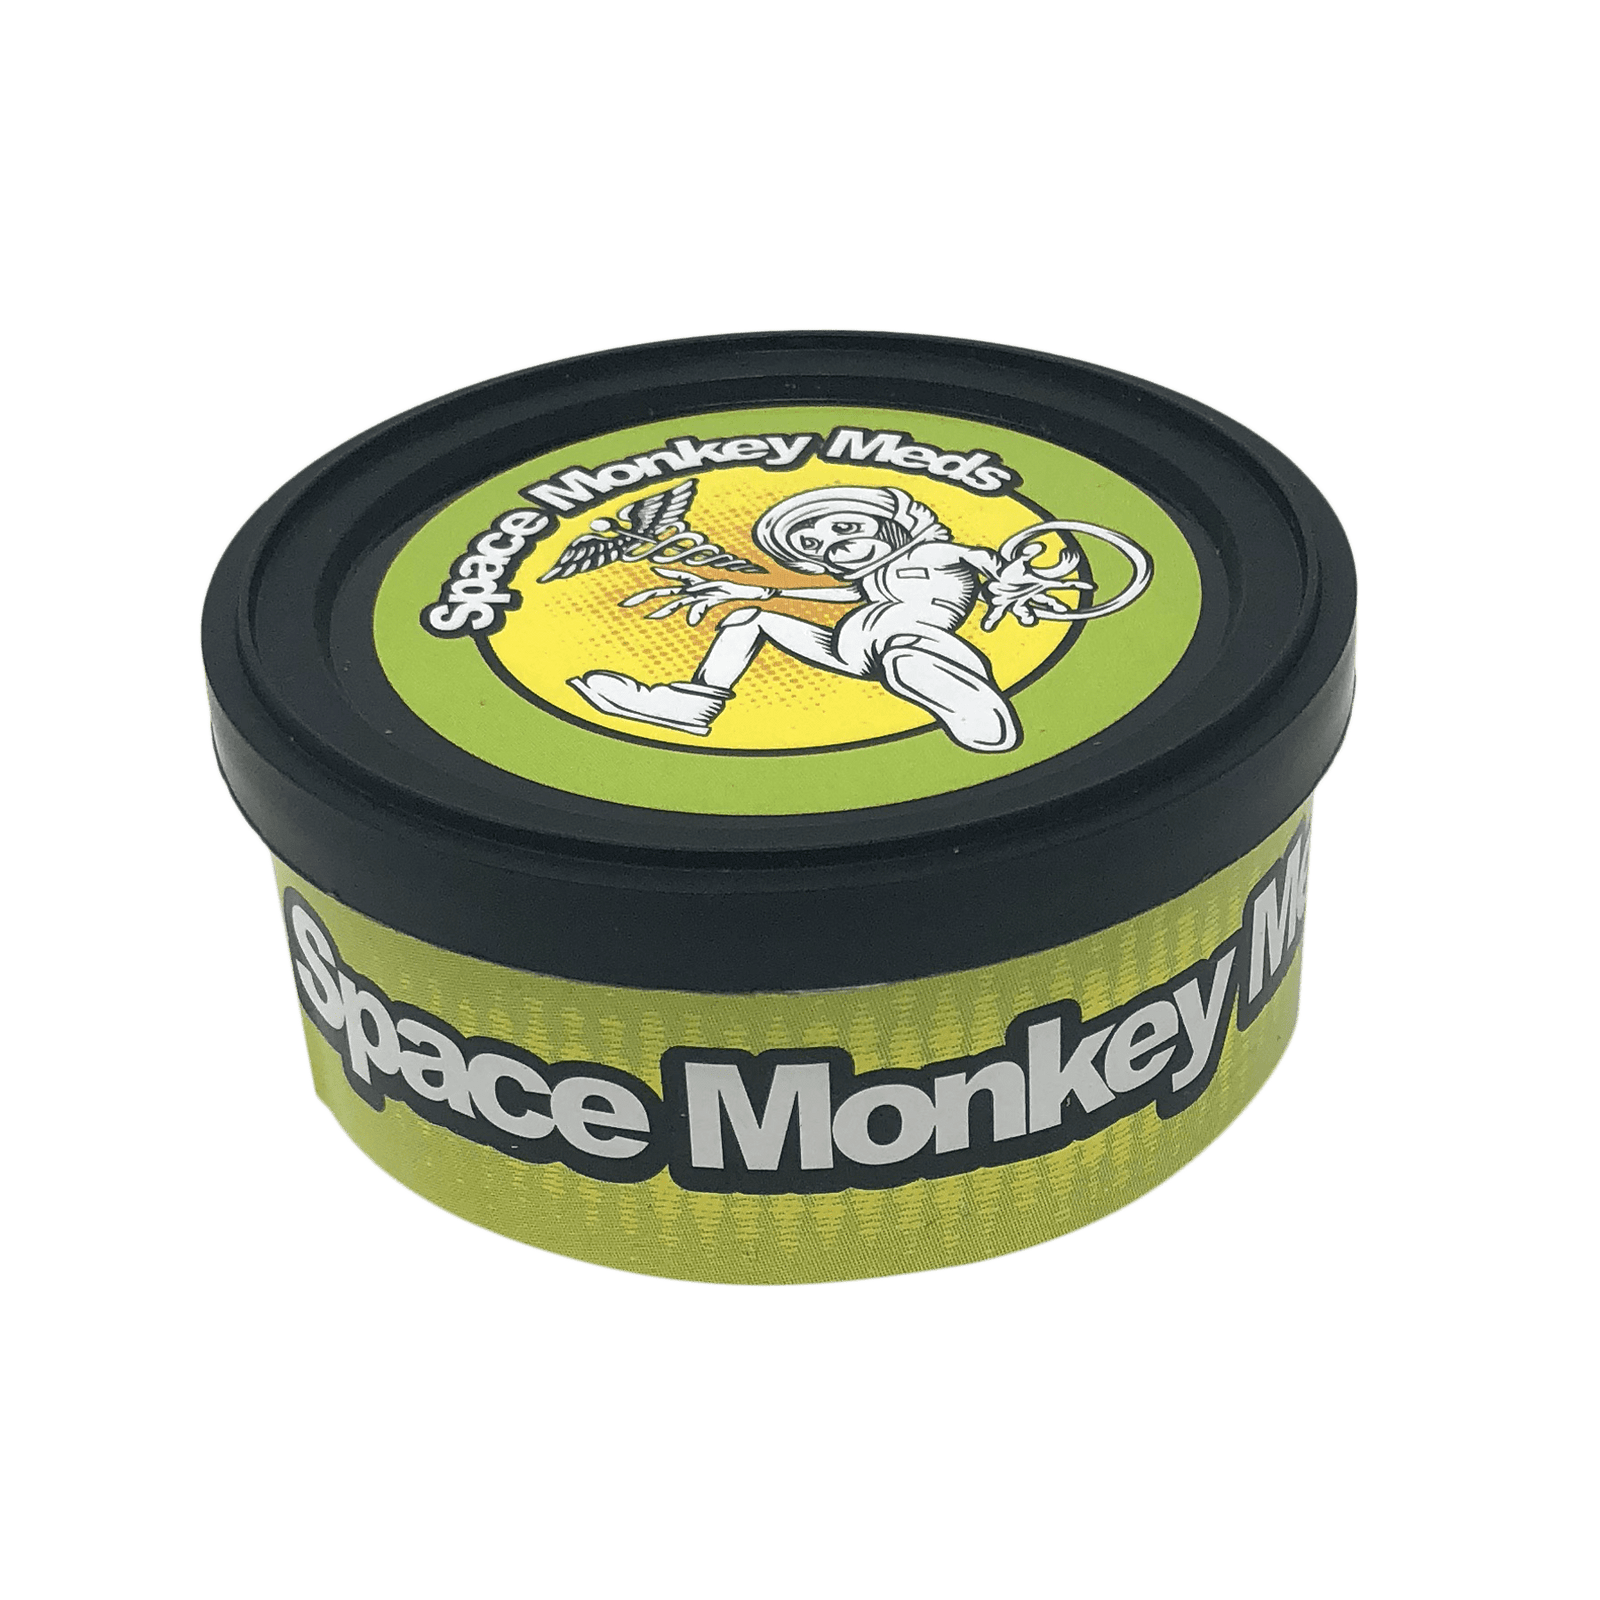 Space Monkey Meds XXX OG - The Balloon Room